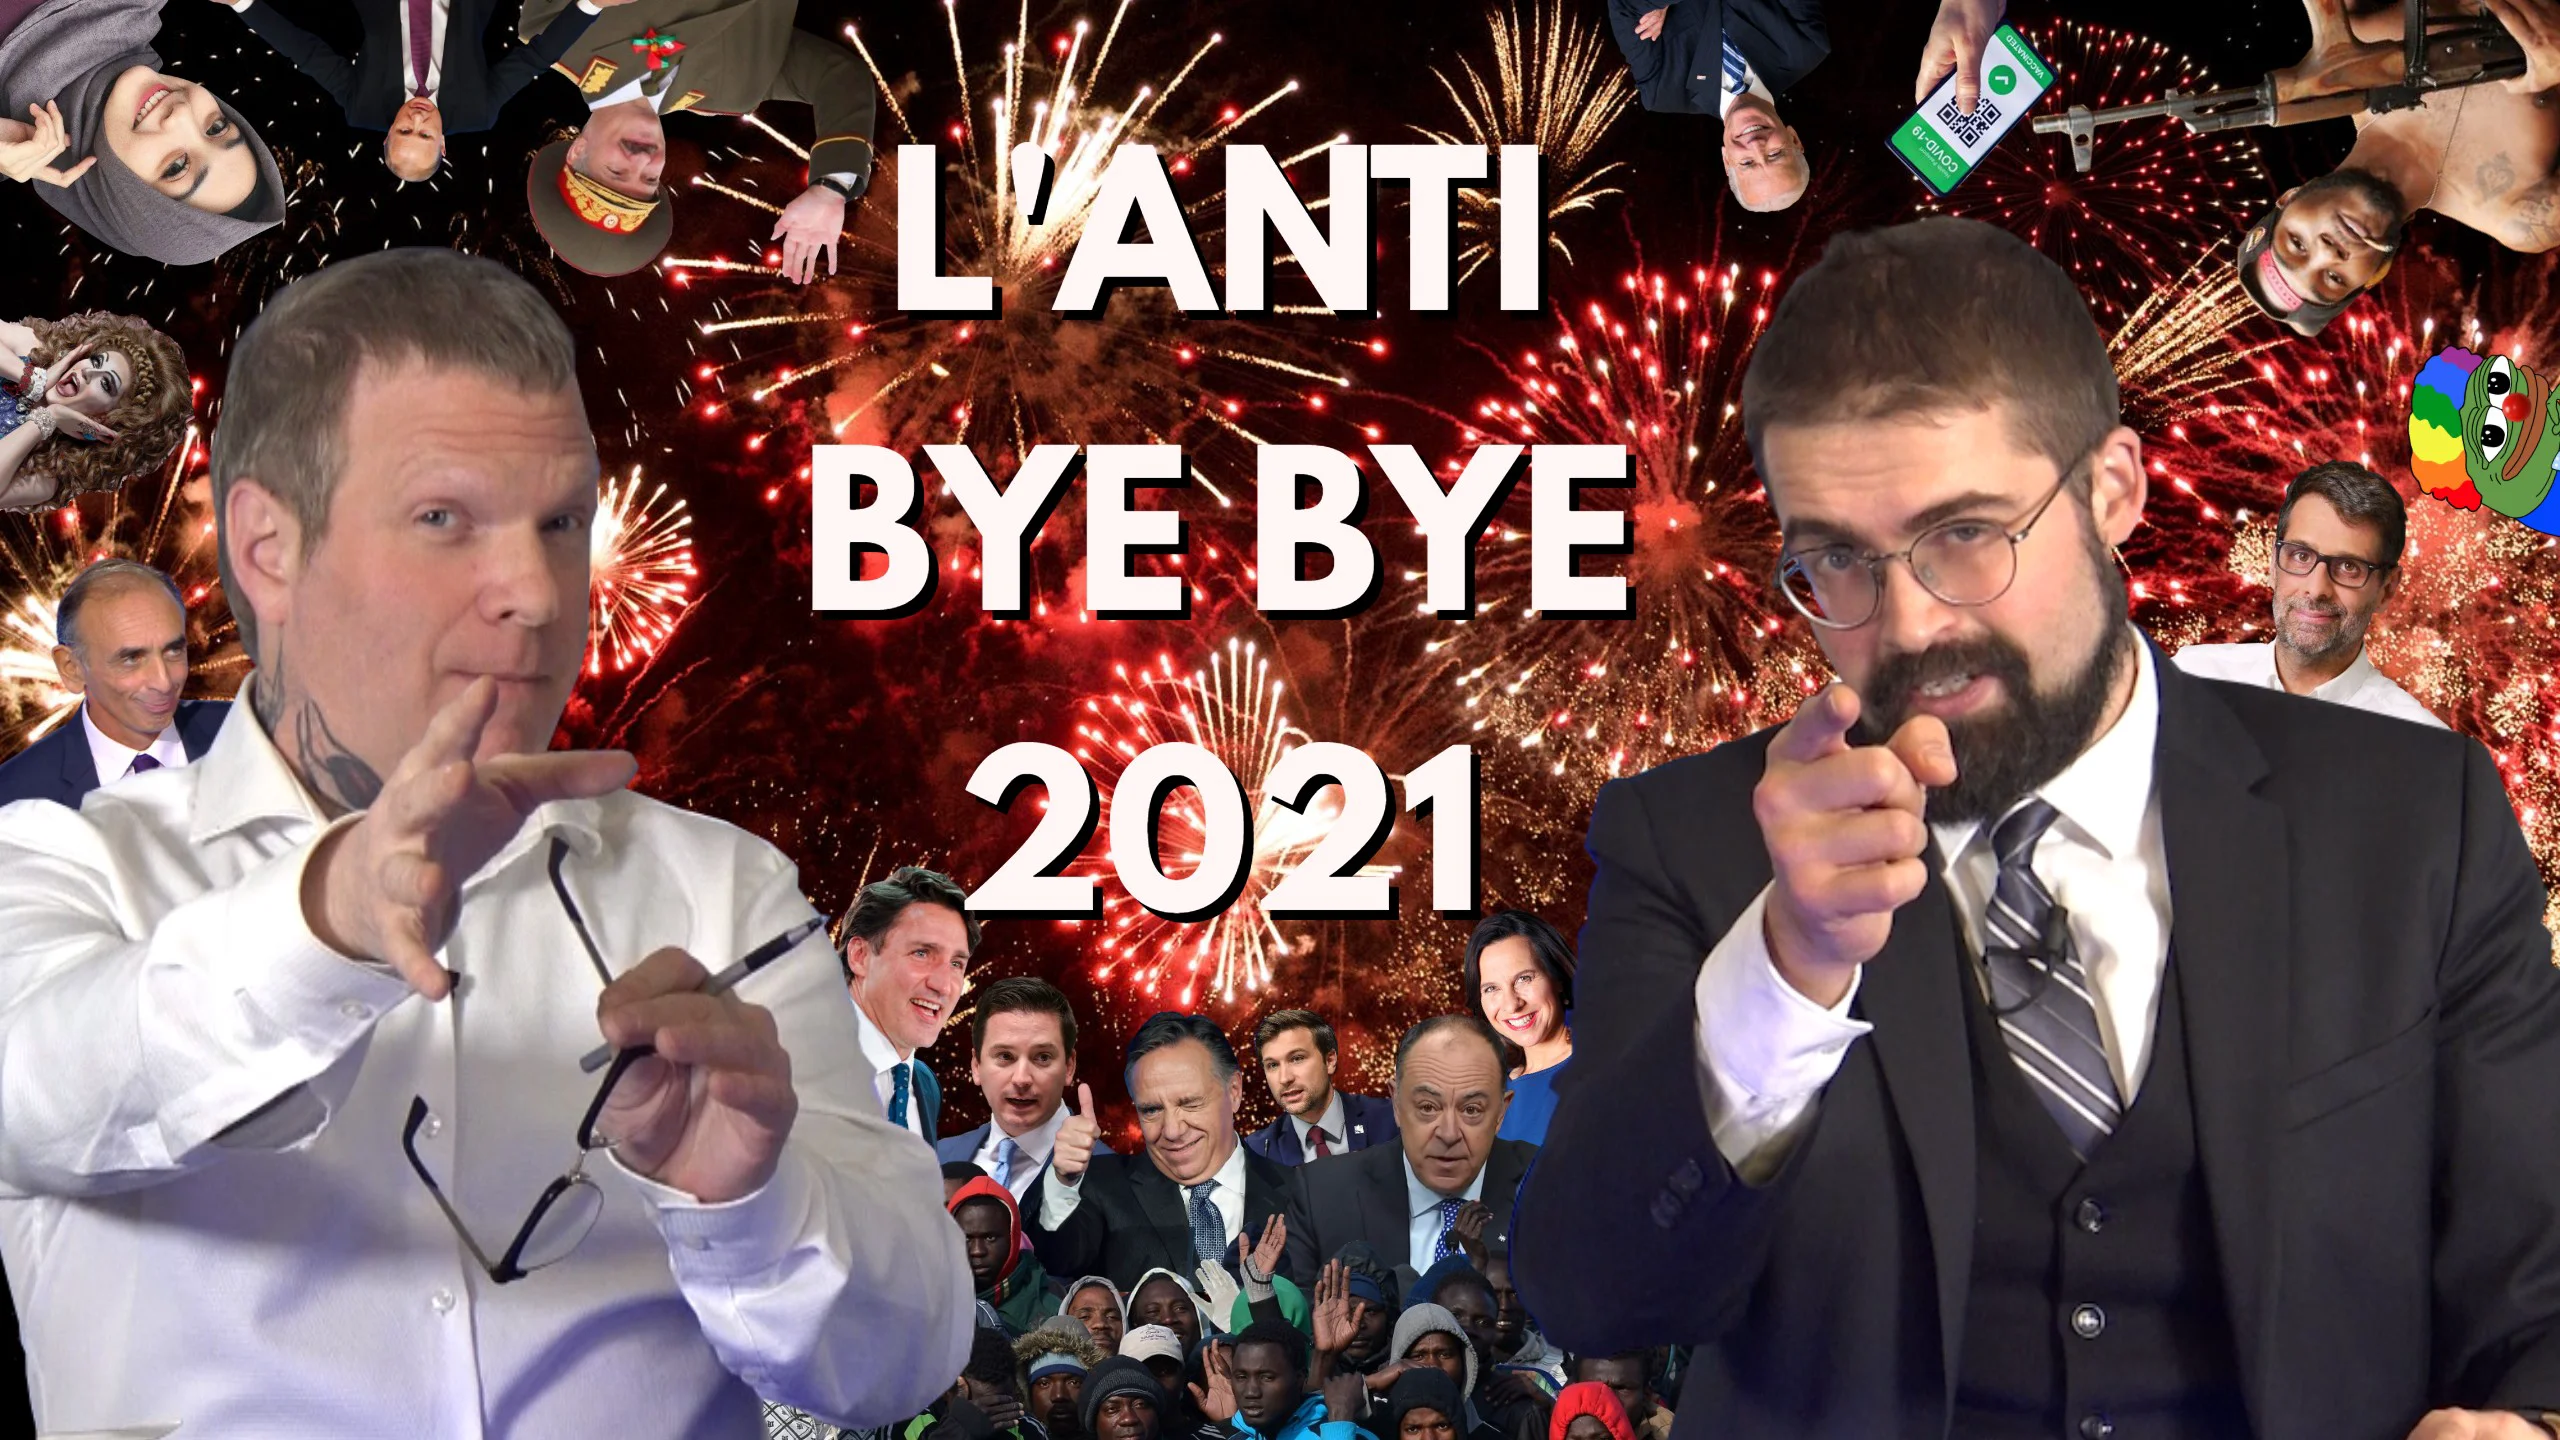 L’Anti Bye Bye 2021 [EN DIRECT] Partie 1/2